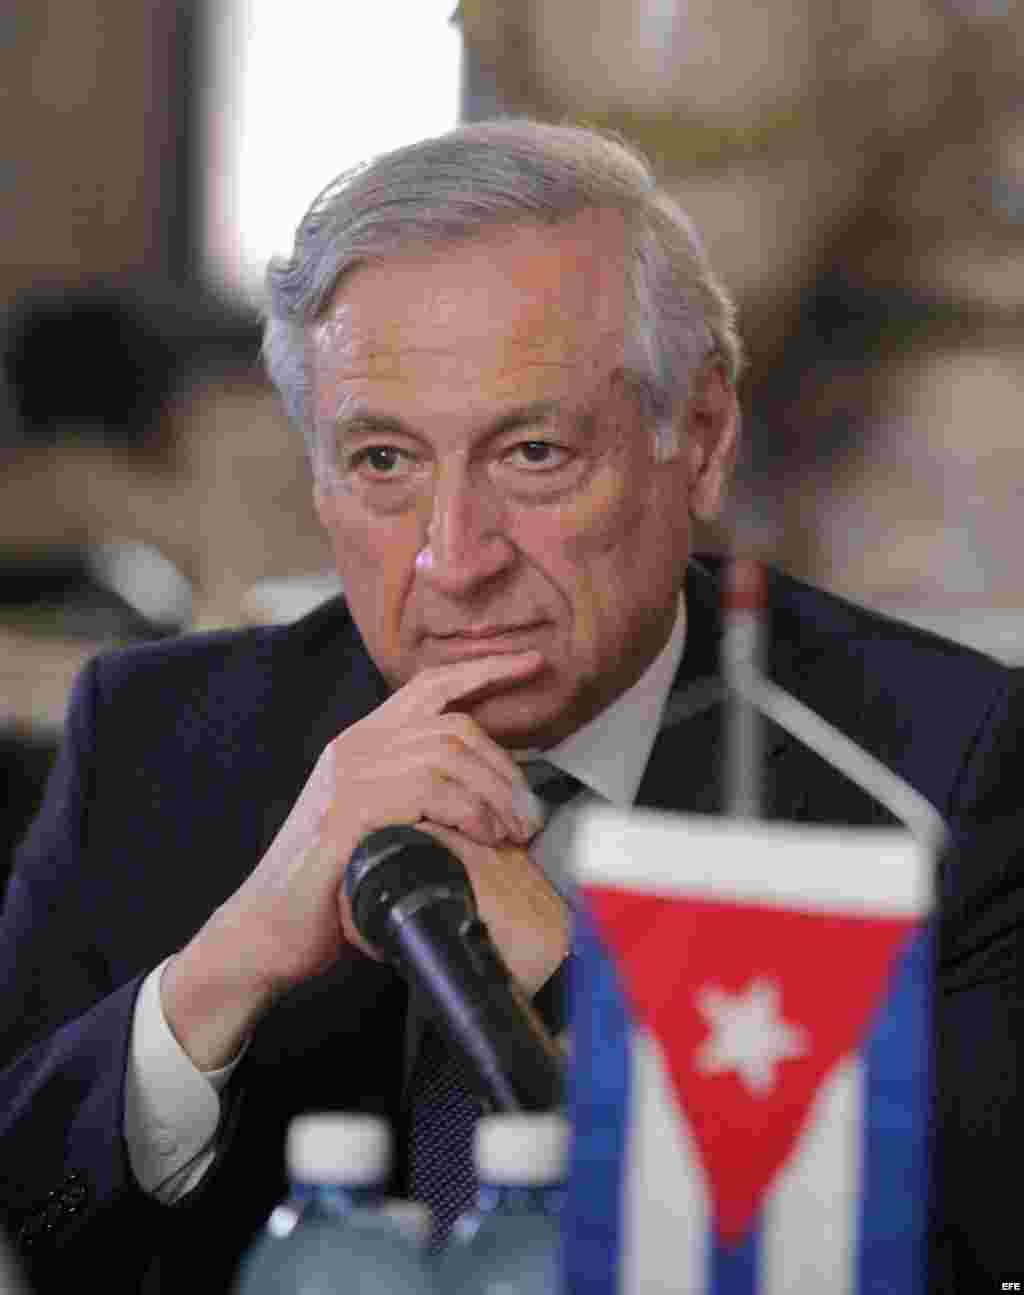 El ministro de Relaciones Exteriores de Chile Heraldo Muñoz participa en una reunión con su homólogo de Cuba Bruno Rodríguez (no en la foto) hoy, jueves 3 de septiembre de 2015, durante una reunión en la sede del ministerio en La Habana (Cuba).